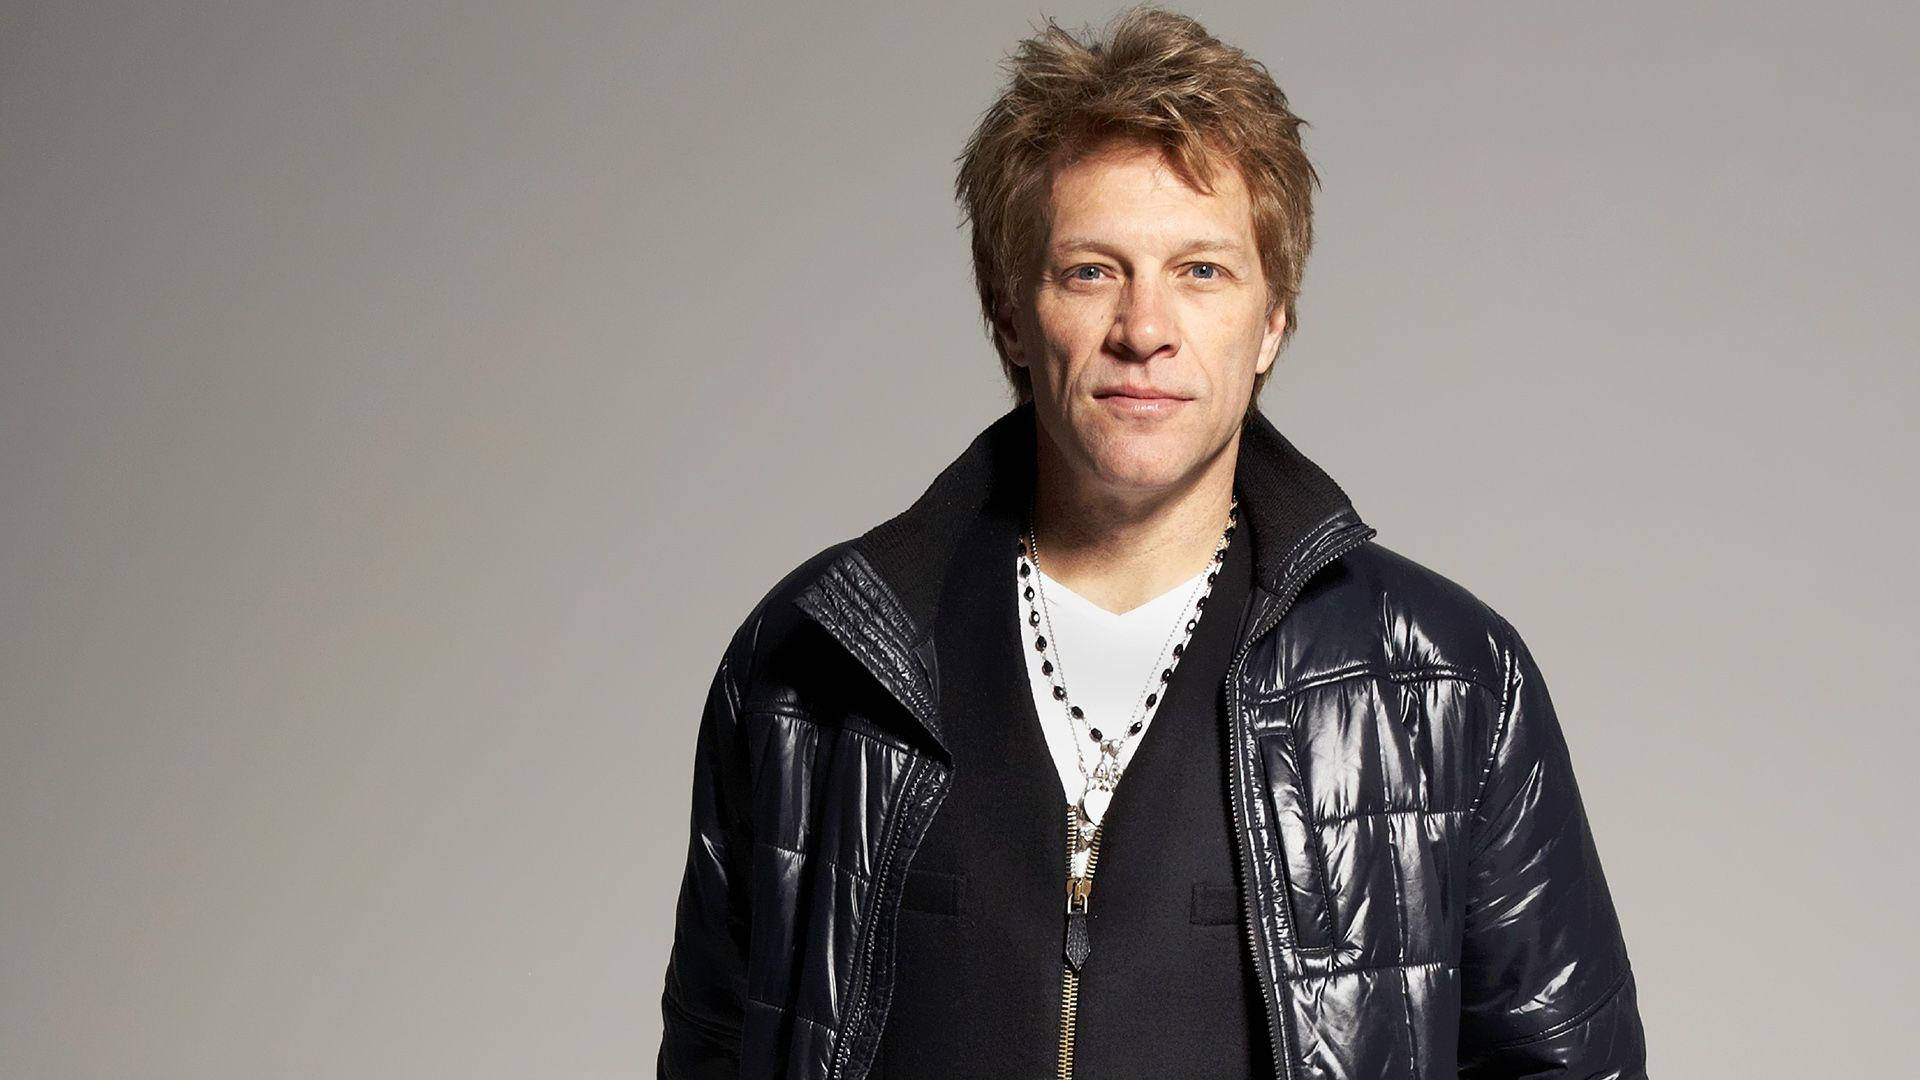 Amerikanskasångaren Jon Bon Jovi Porträtt Av Dan Hallman För Dator- Eller Mobilbakgrund. Wallpaper